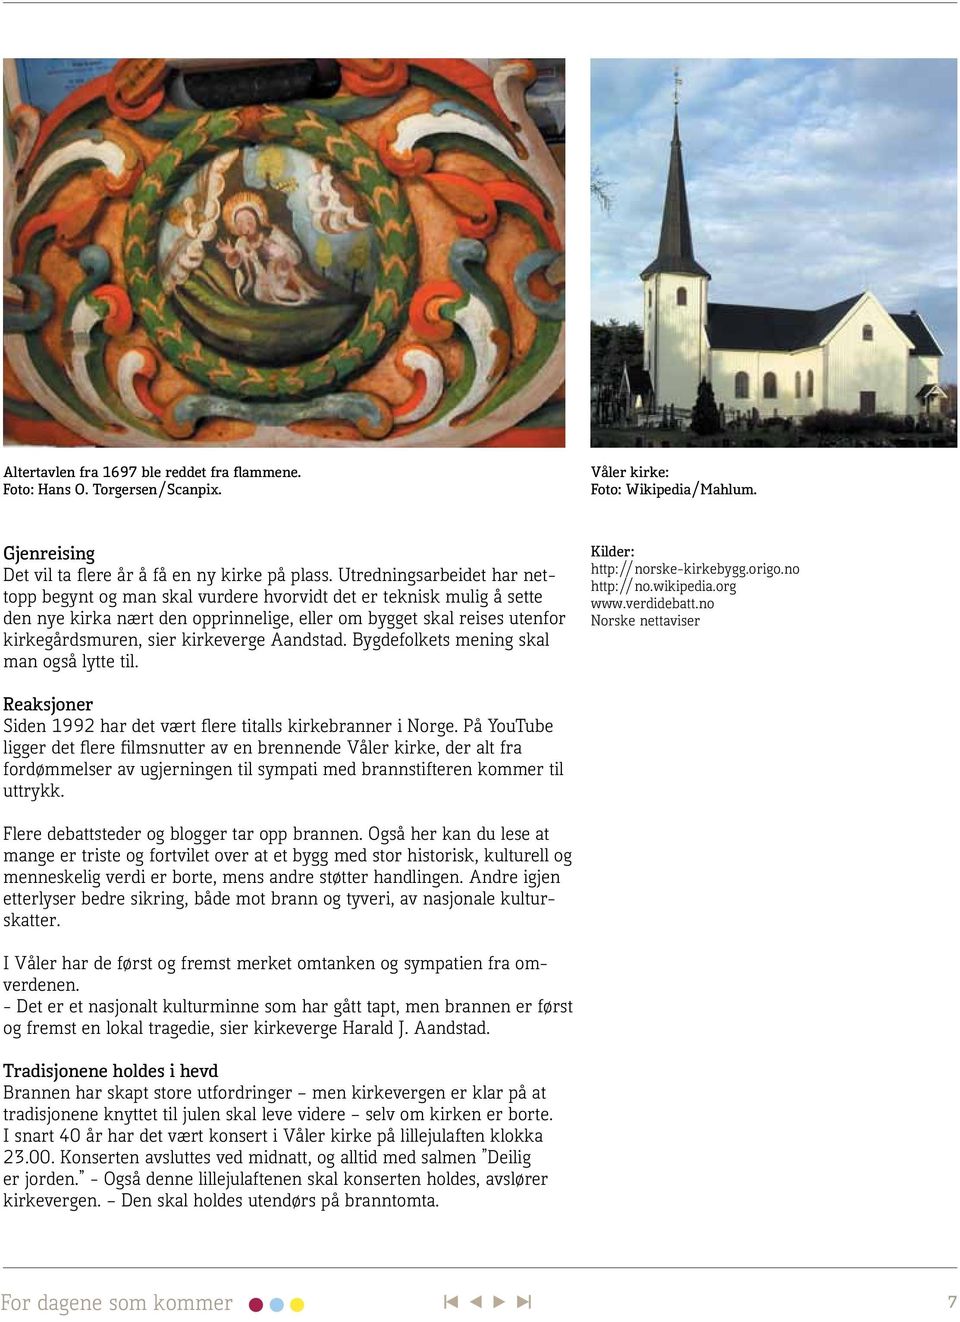 kirkeverge Aandstad. Bygdefolkets mening skal man også lytte til. Kilder: http://norske-kirkebygg.origo.no http://no.wikipedia.org www.verdidebatt.